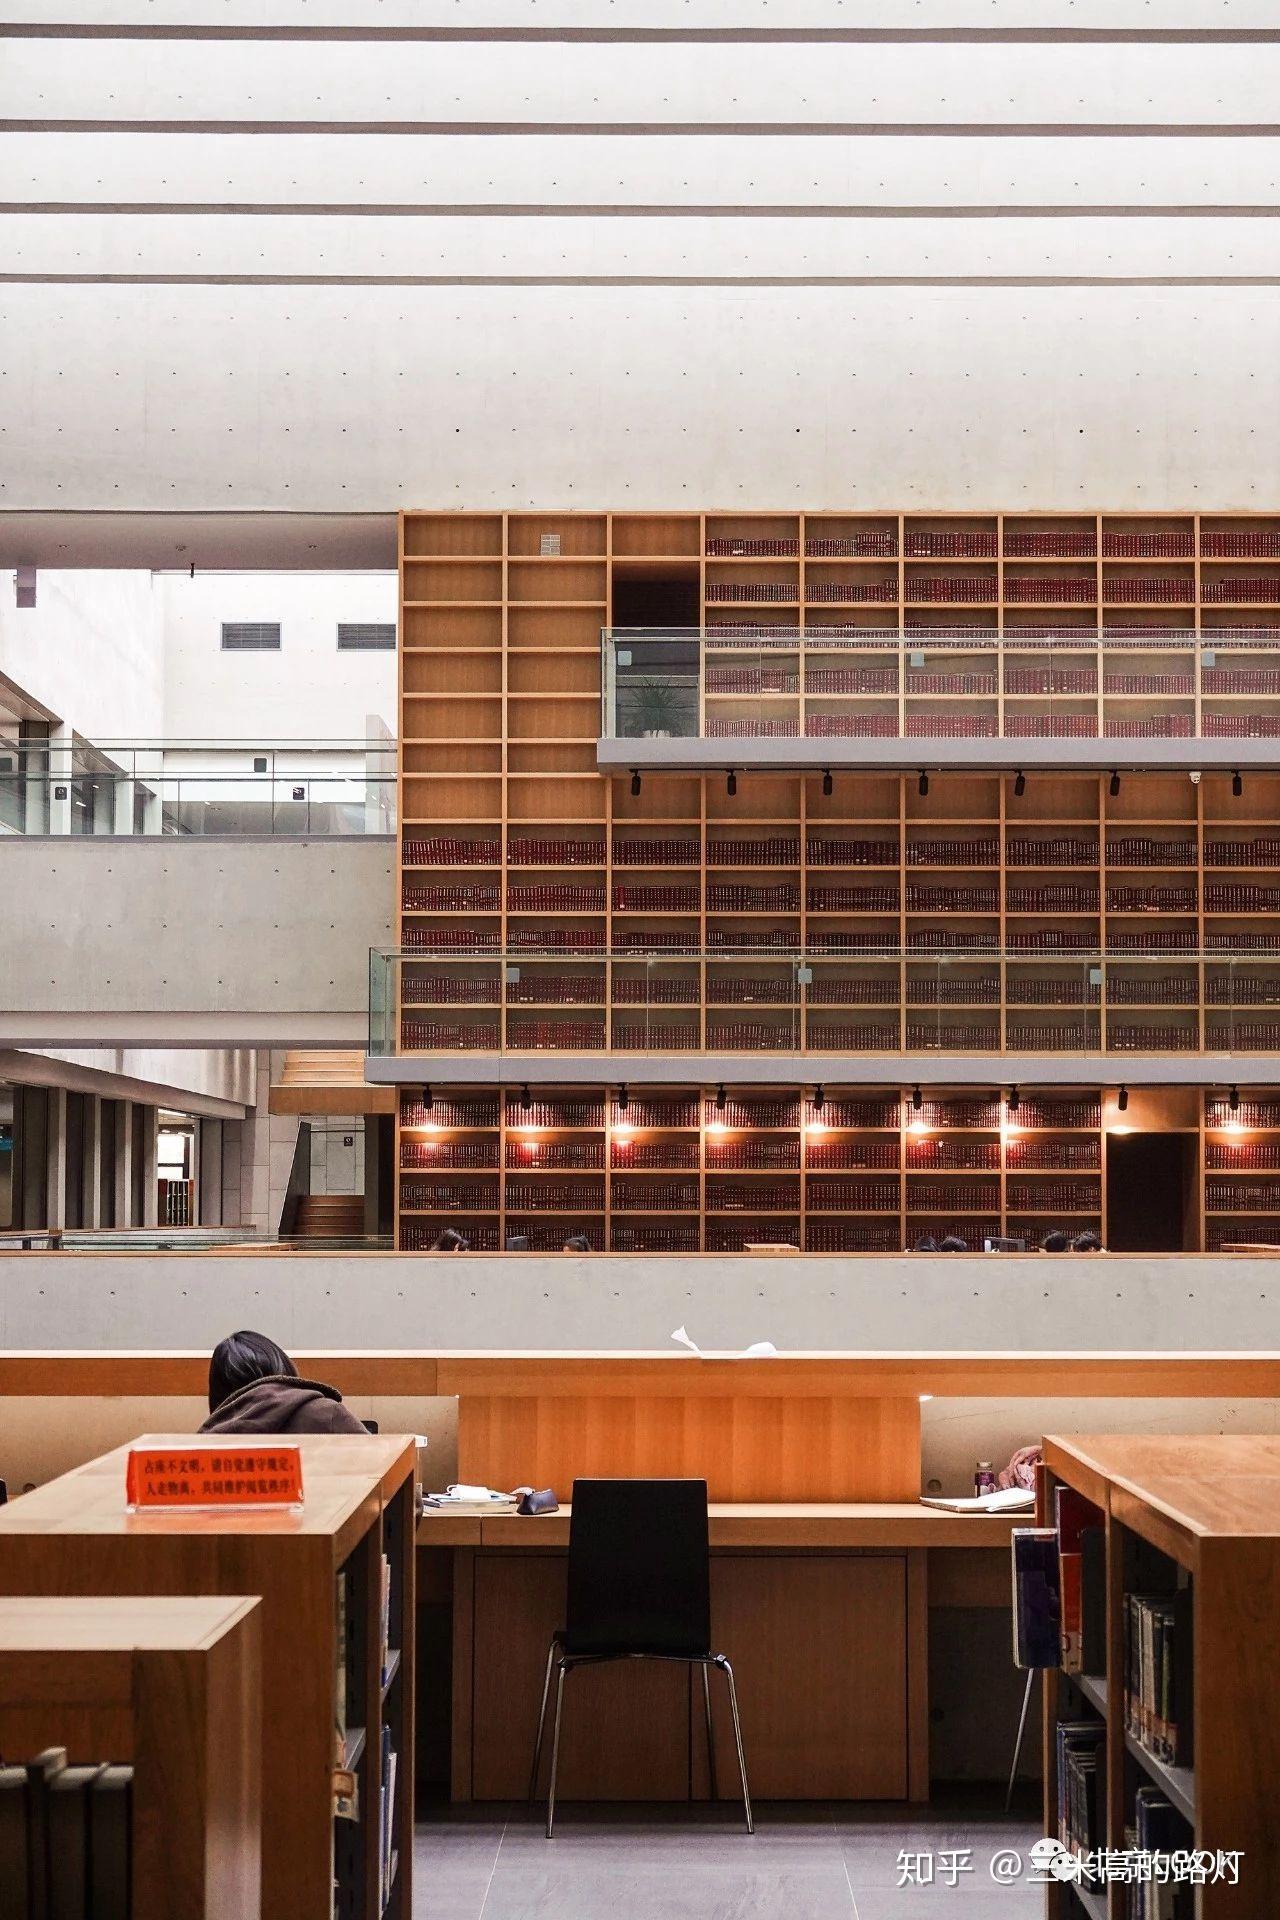 北京工业大学的图书馆或教室环境如何?是否适合上自习? 